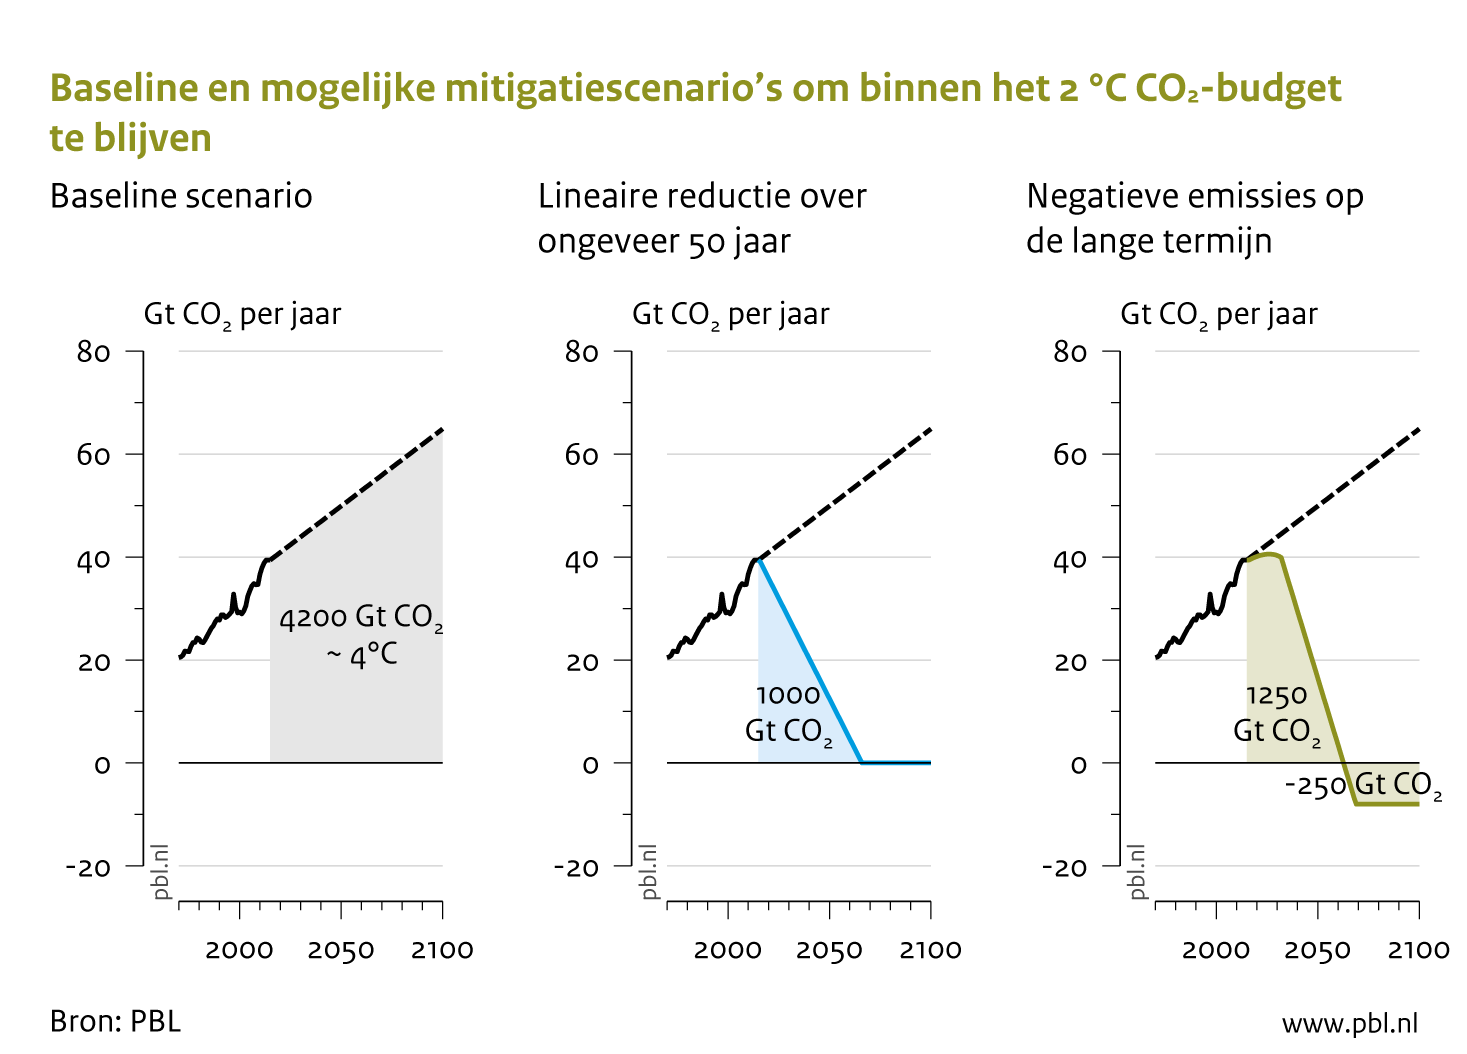 Emissies op basis van historische trend en 2 illustraties van scenario’s binnen een koolstofbudget van 1000 miljard ton CO2 (2 graden scenarios). 1 miljard ton = 1 GtCO2